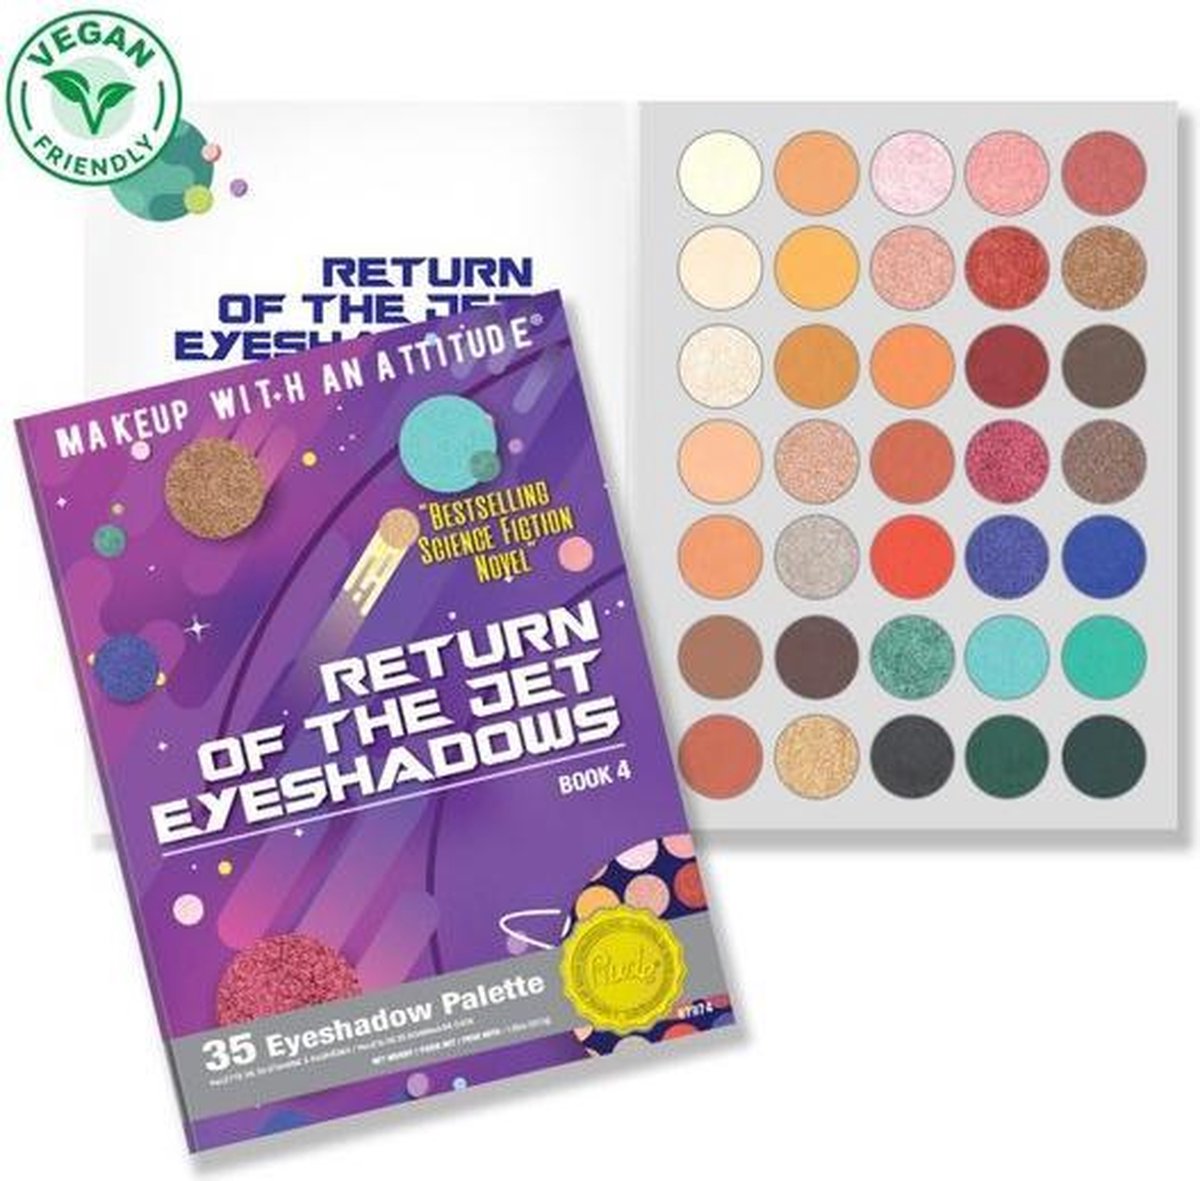 Rude Cosmetics Return Of The Jet Eyeshadow Palette - 35 Eyeshadow Palette - Book 4